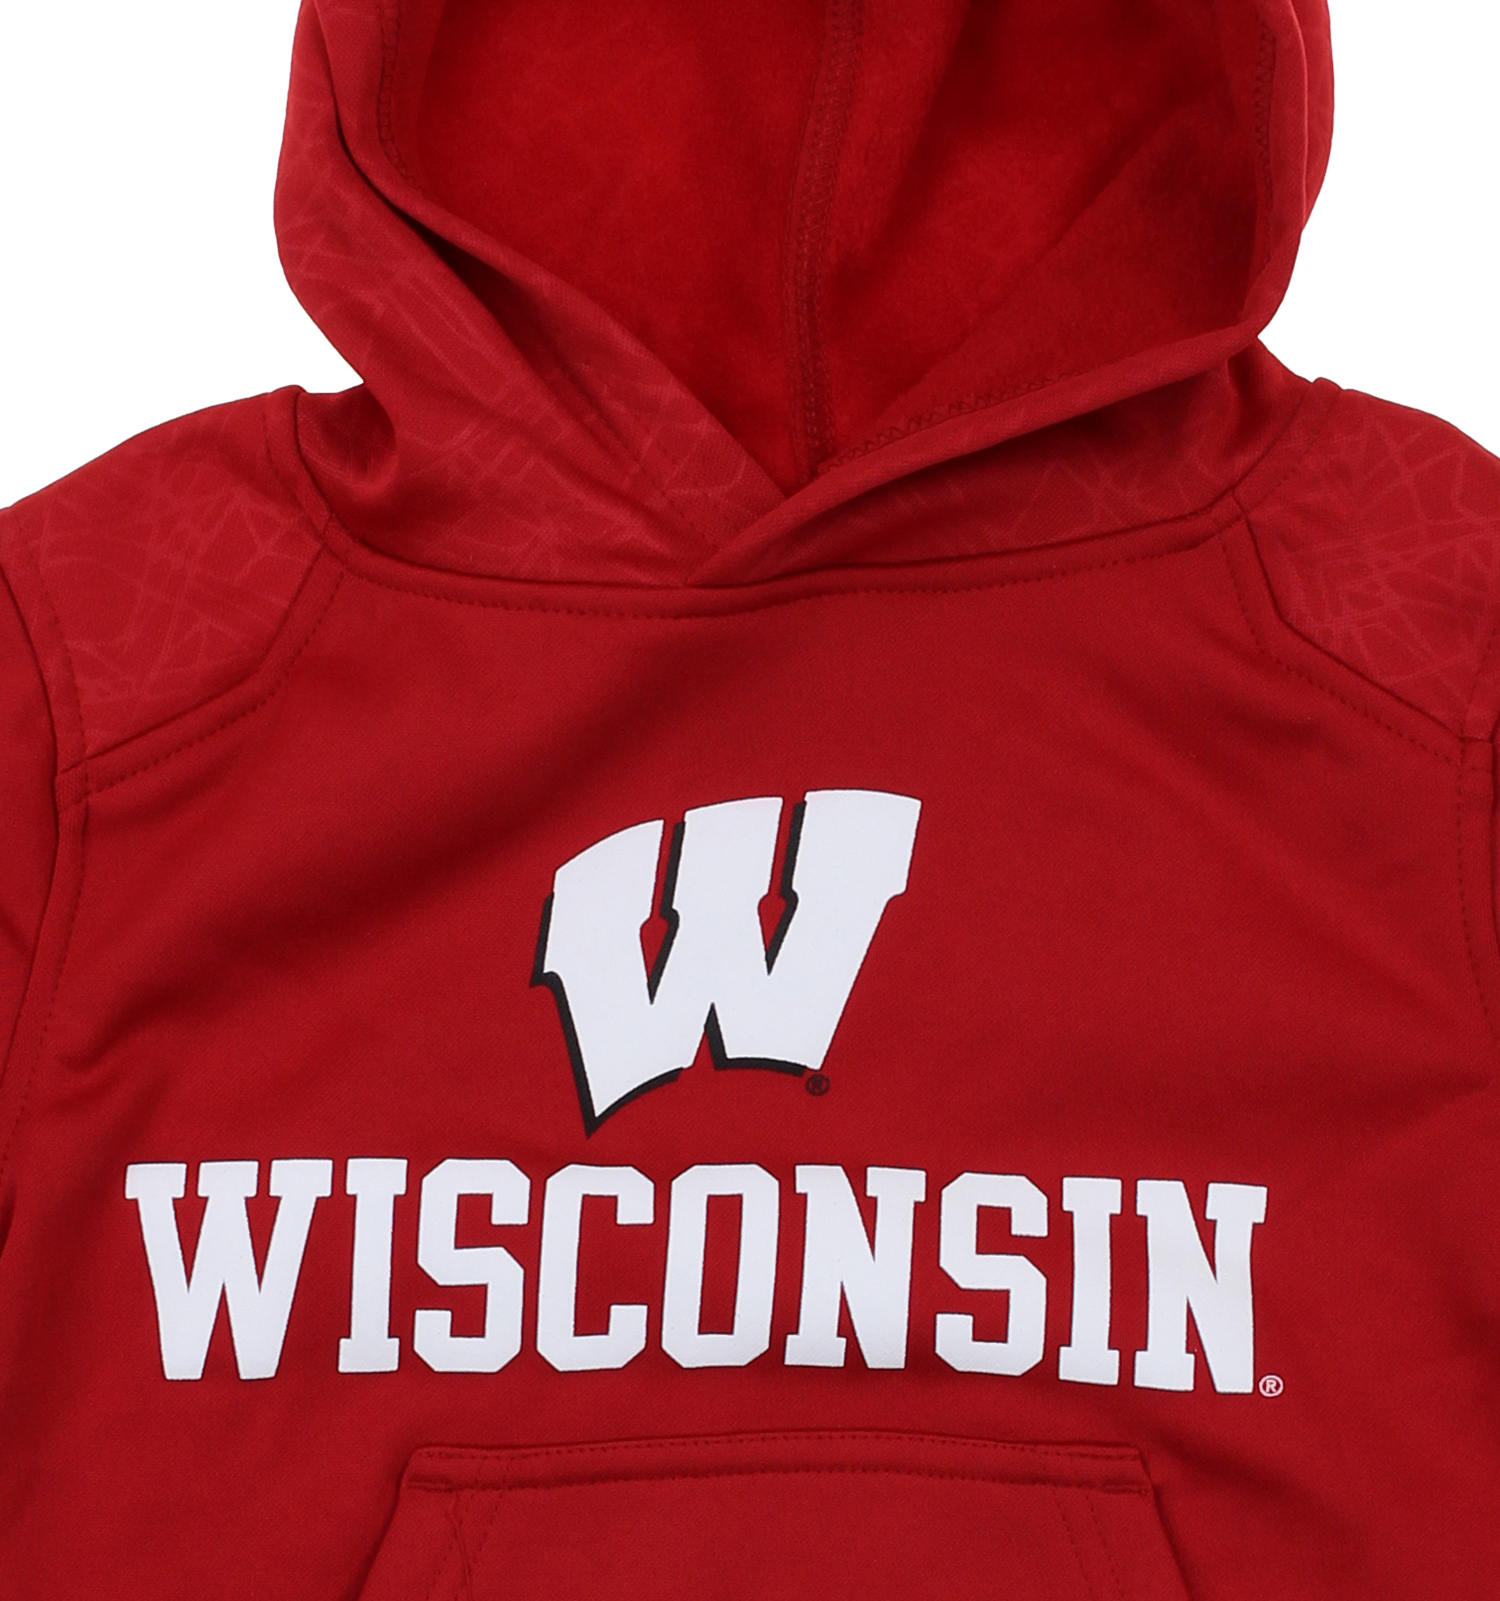 NCAA Kids Wisconsin Badgers Performance Hoodie, Red | eBay